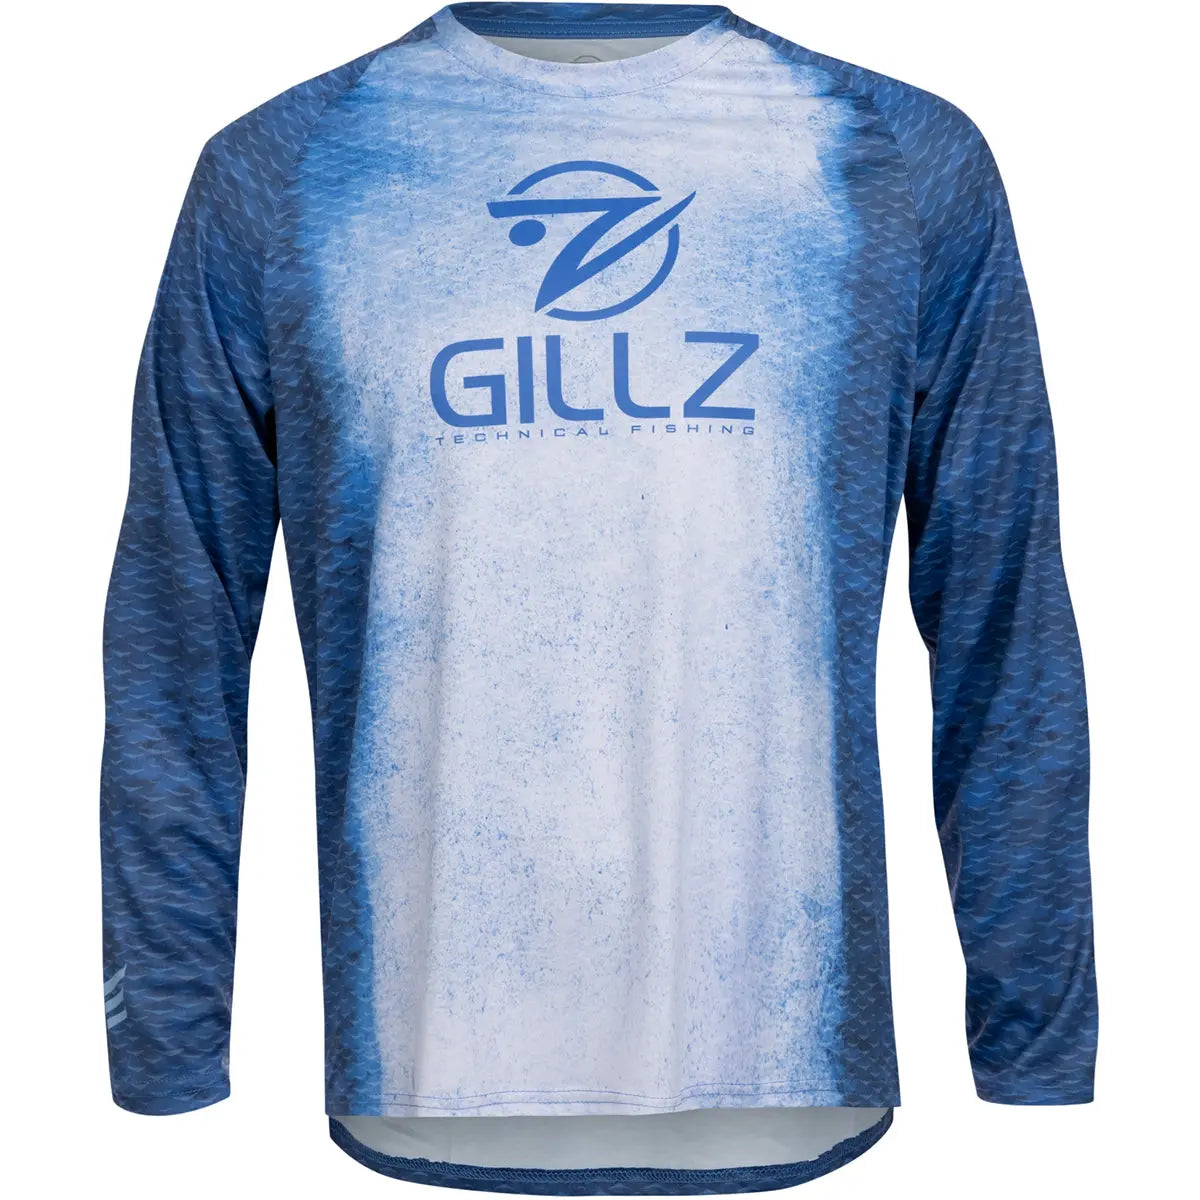 Gillz Contender Series FS UV Long Sleeve T-Shirt - Classic Blue Gillz